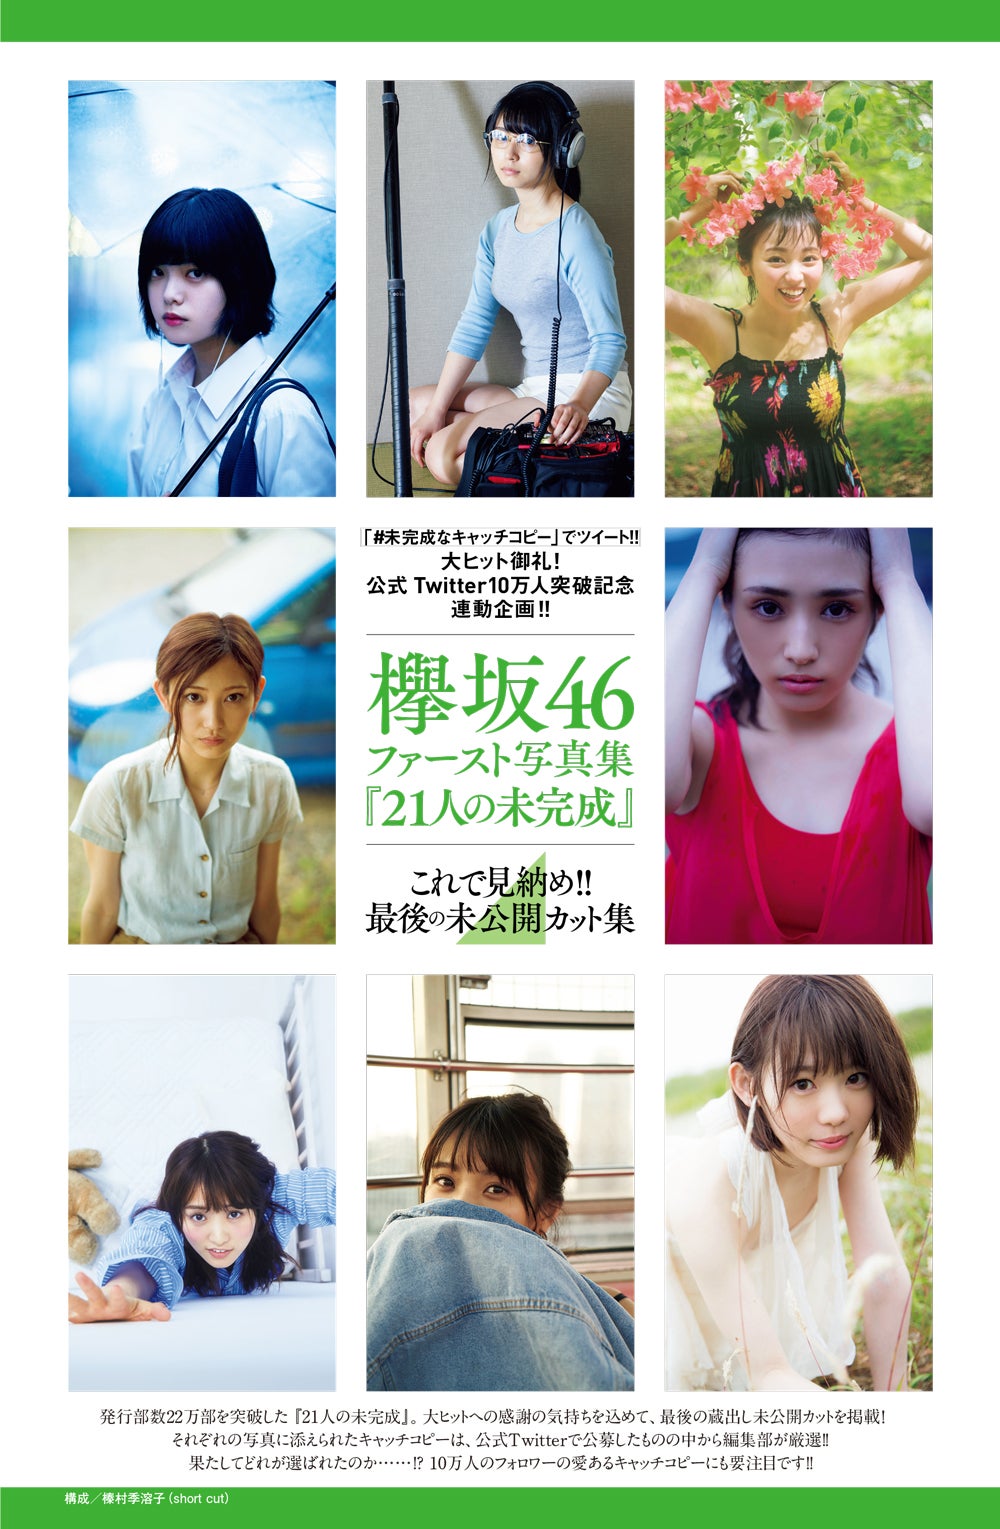 21人の未完成 欅坂46ファースト写真集 プレイボーイ HMV 限定版 新品